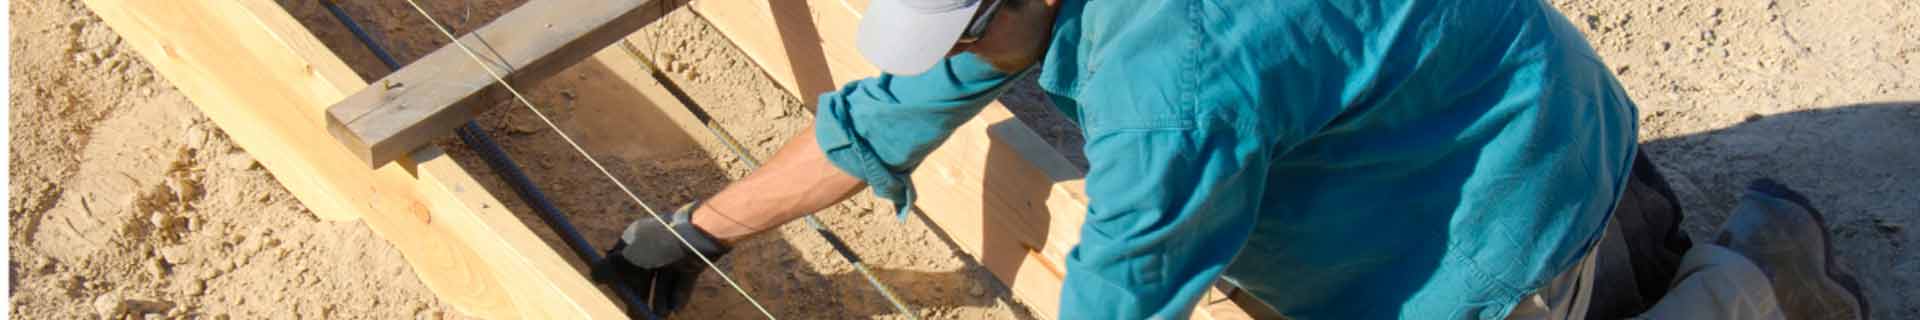 Productiemedewerker beton vacatures | De beste en meest actuele Productiemedewerker beton vacatures.